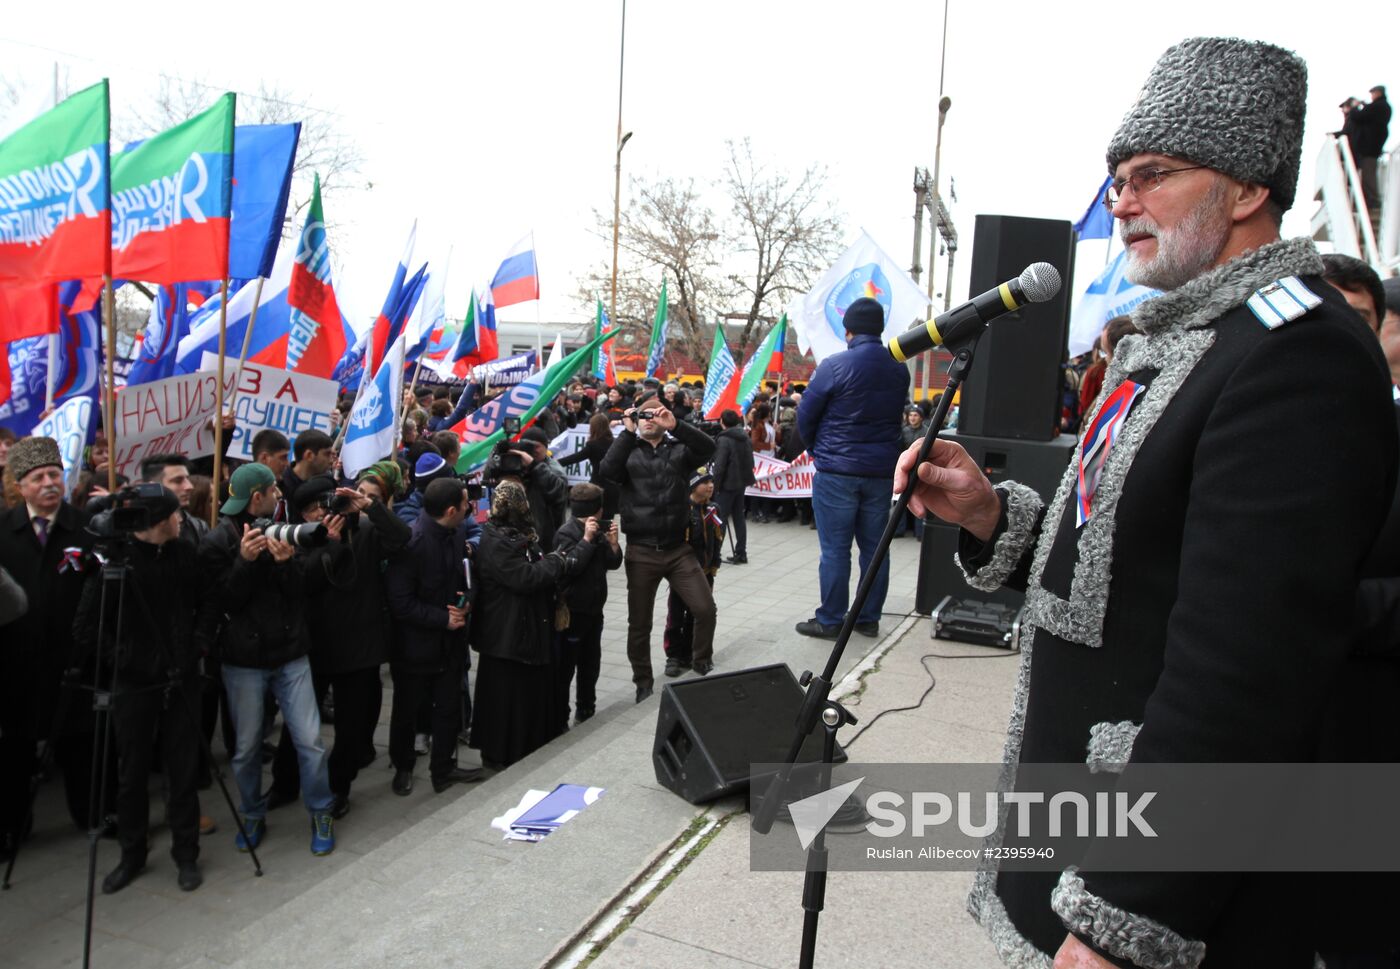 Rallies across Russia in support of compatriots in Ukraine